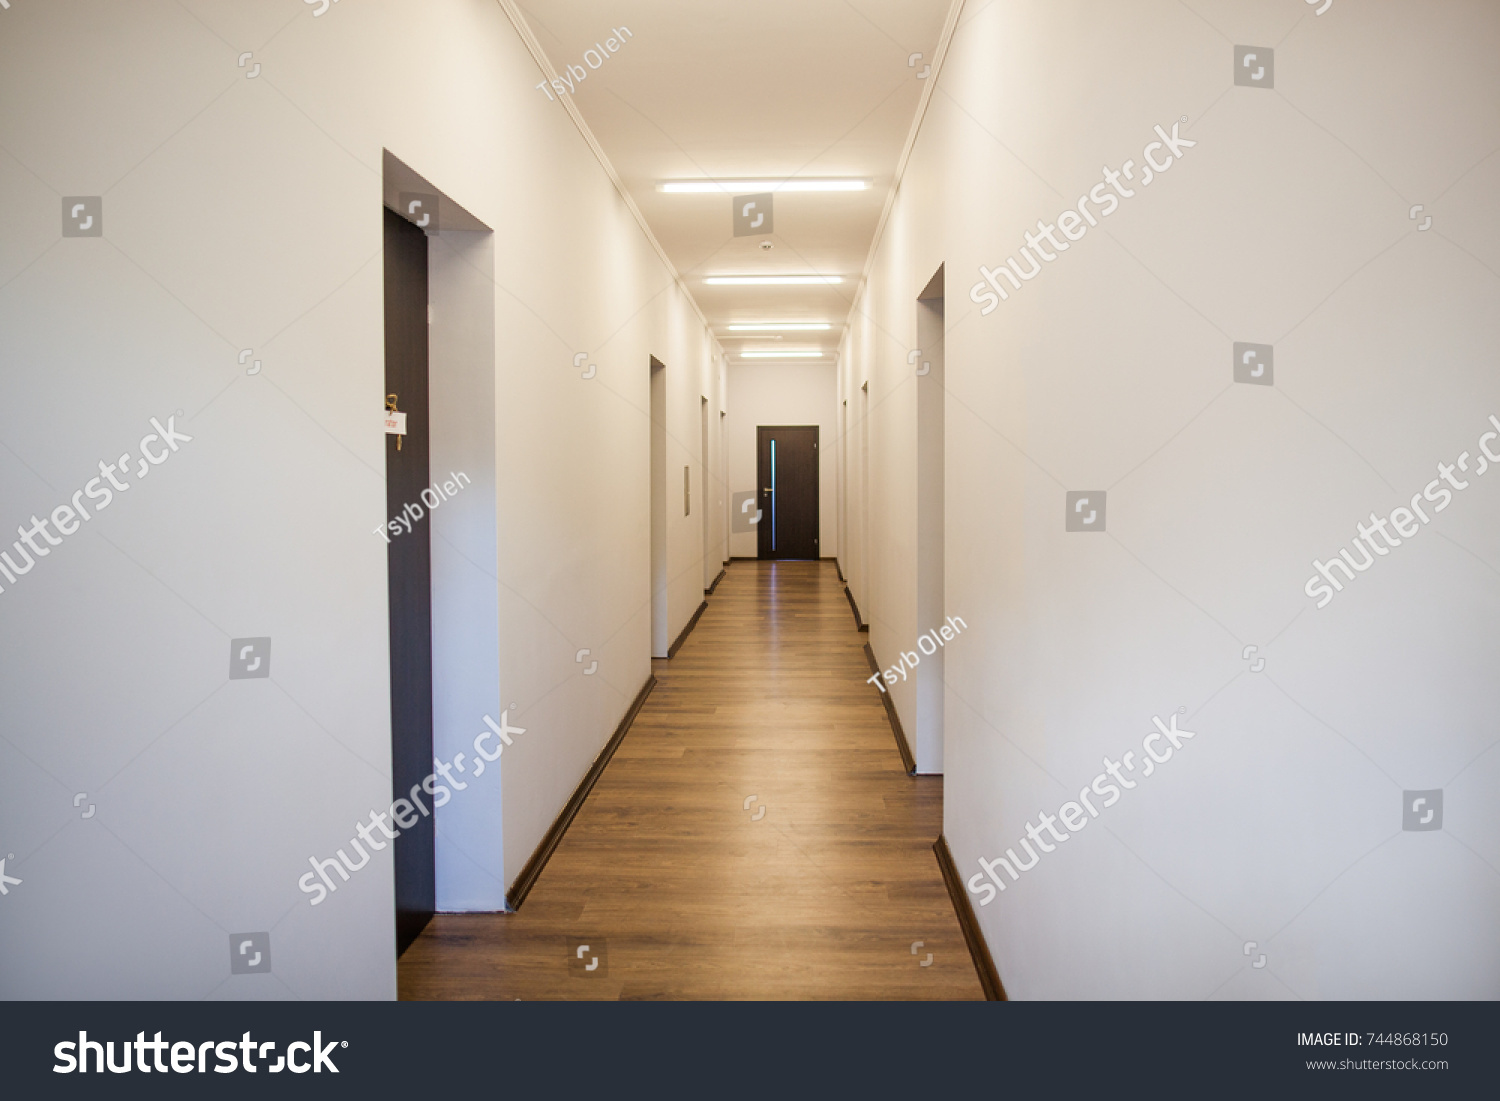 photo of empty corridor with many doors #744868150